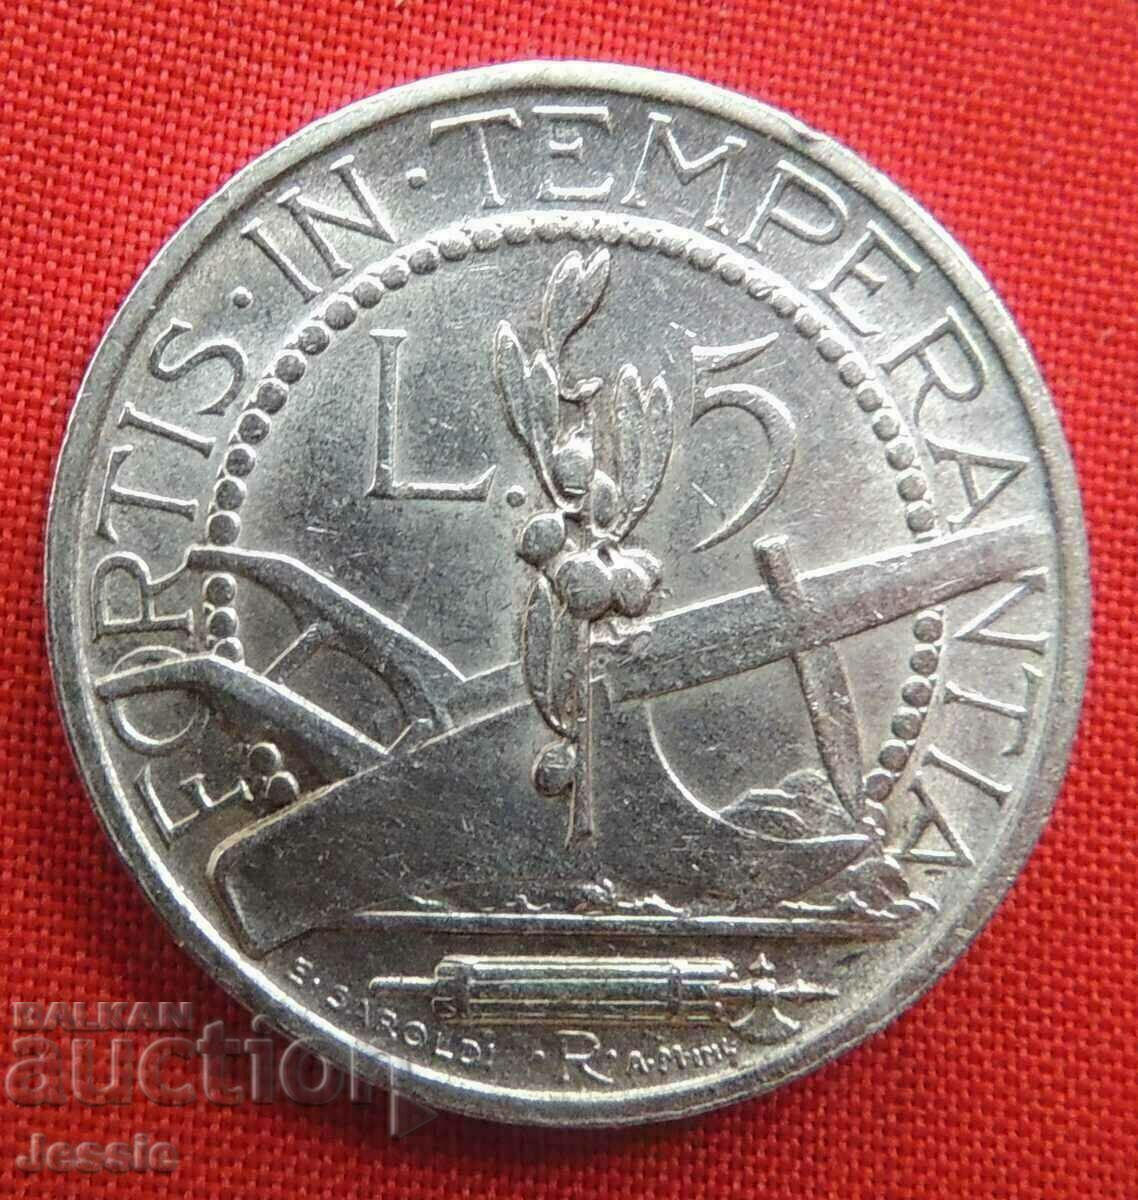 5 λίρες 1936 R San Marino Silver